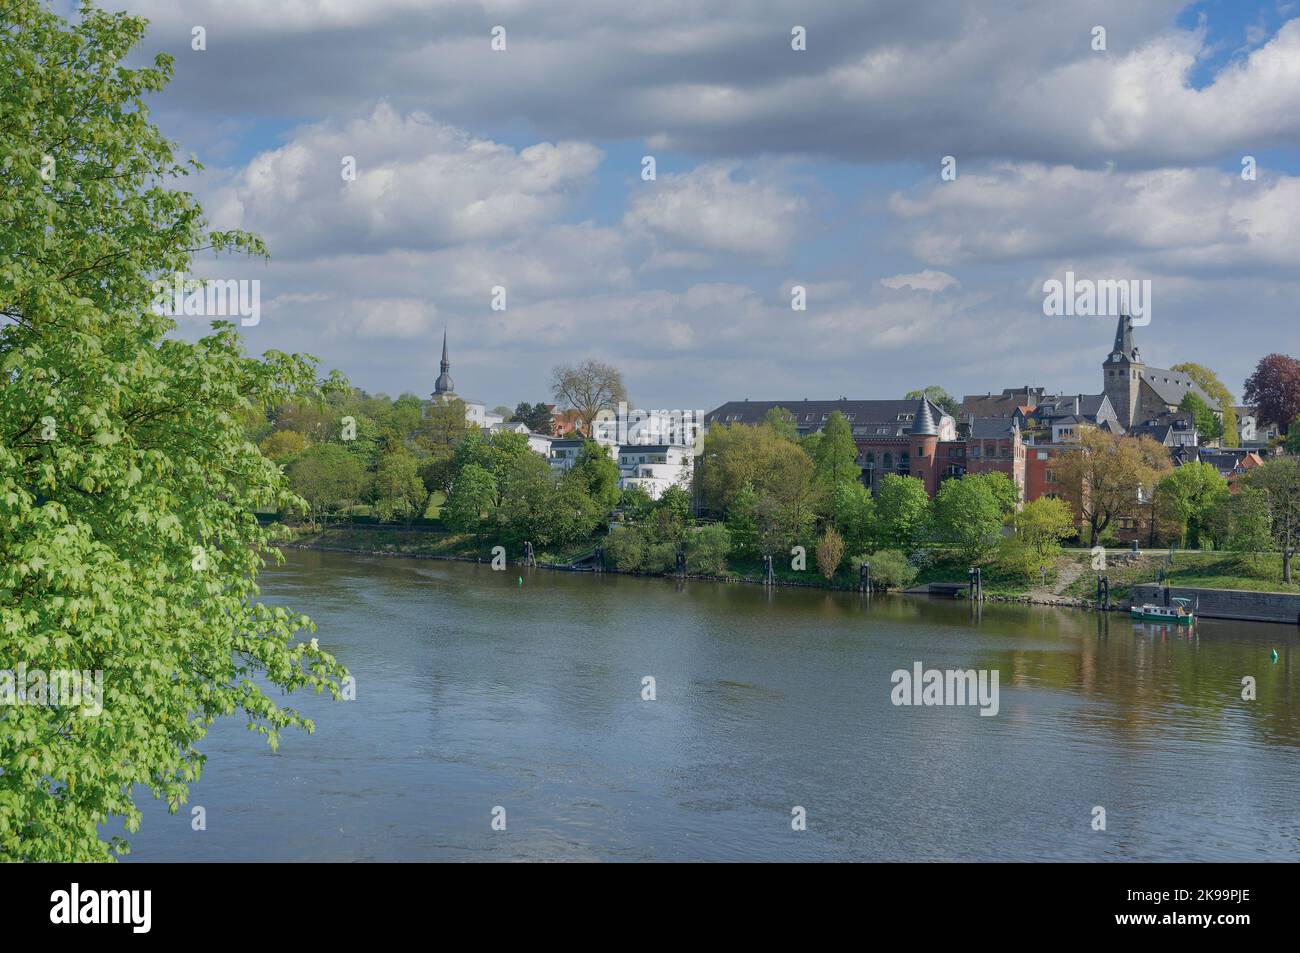 Essen-Kettwig en el río Ruhr, Ruhrgebiet, Alemania Foto de stock